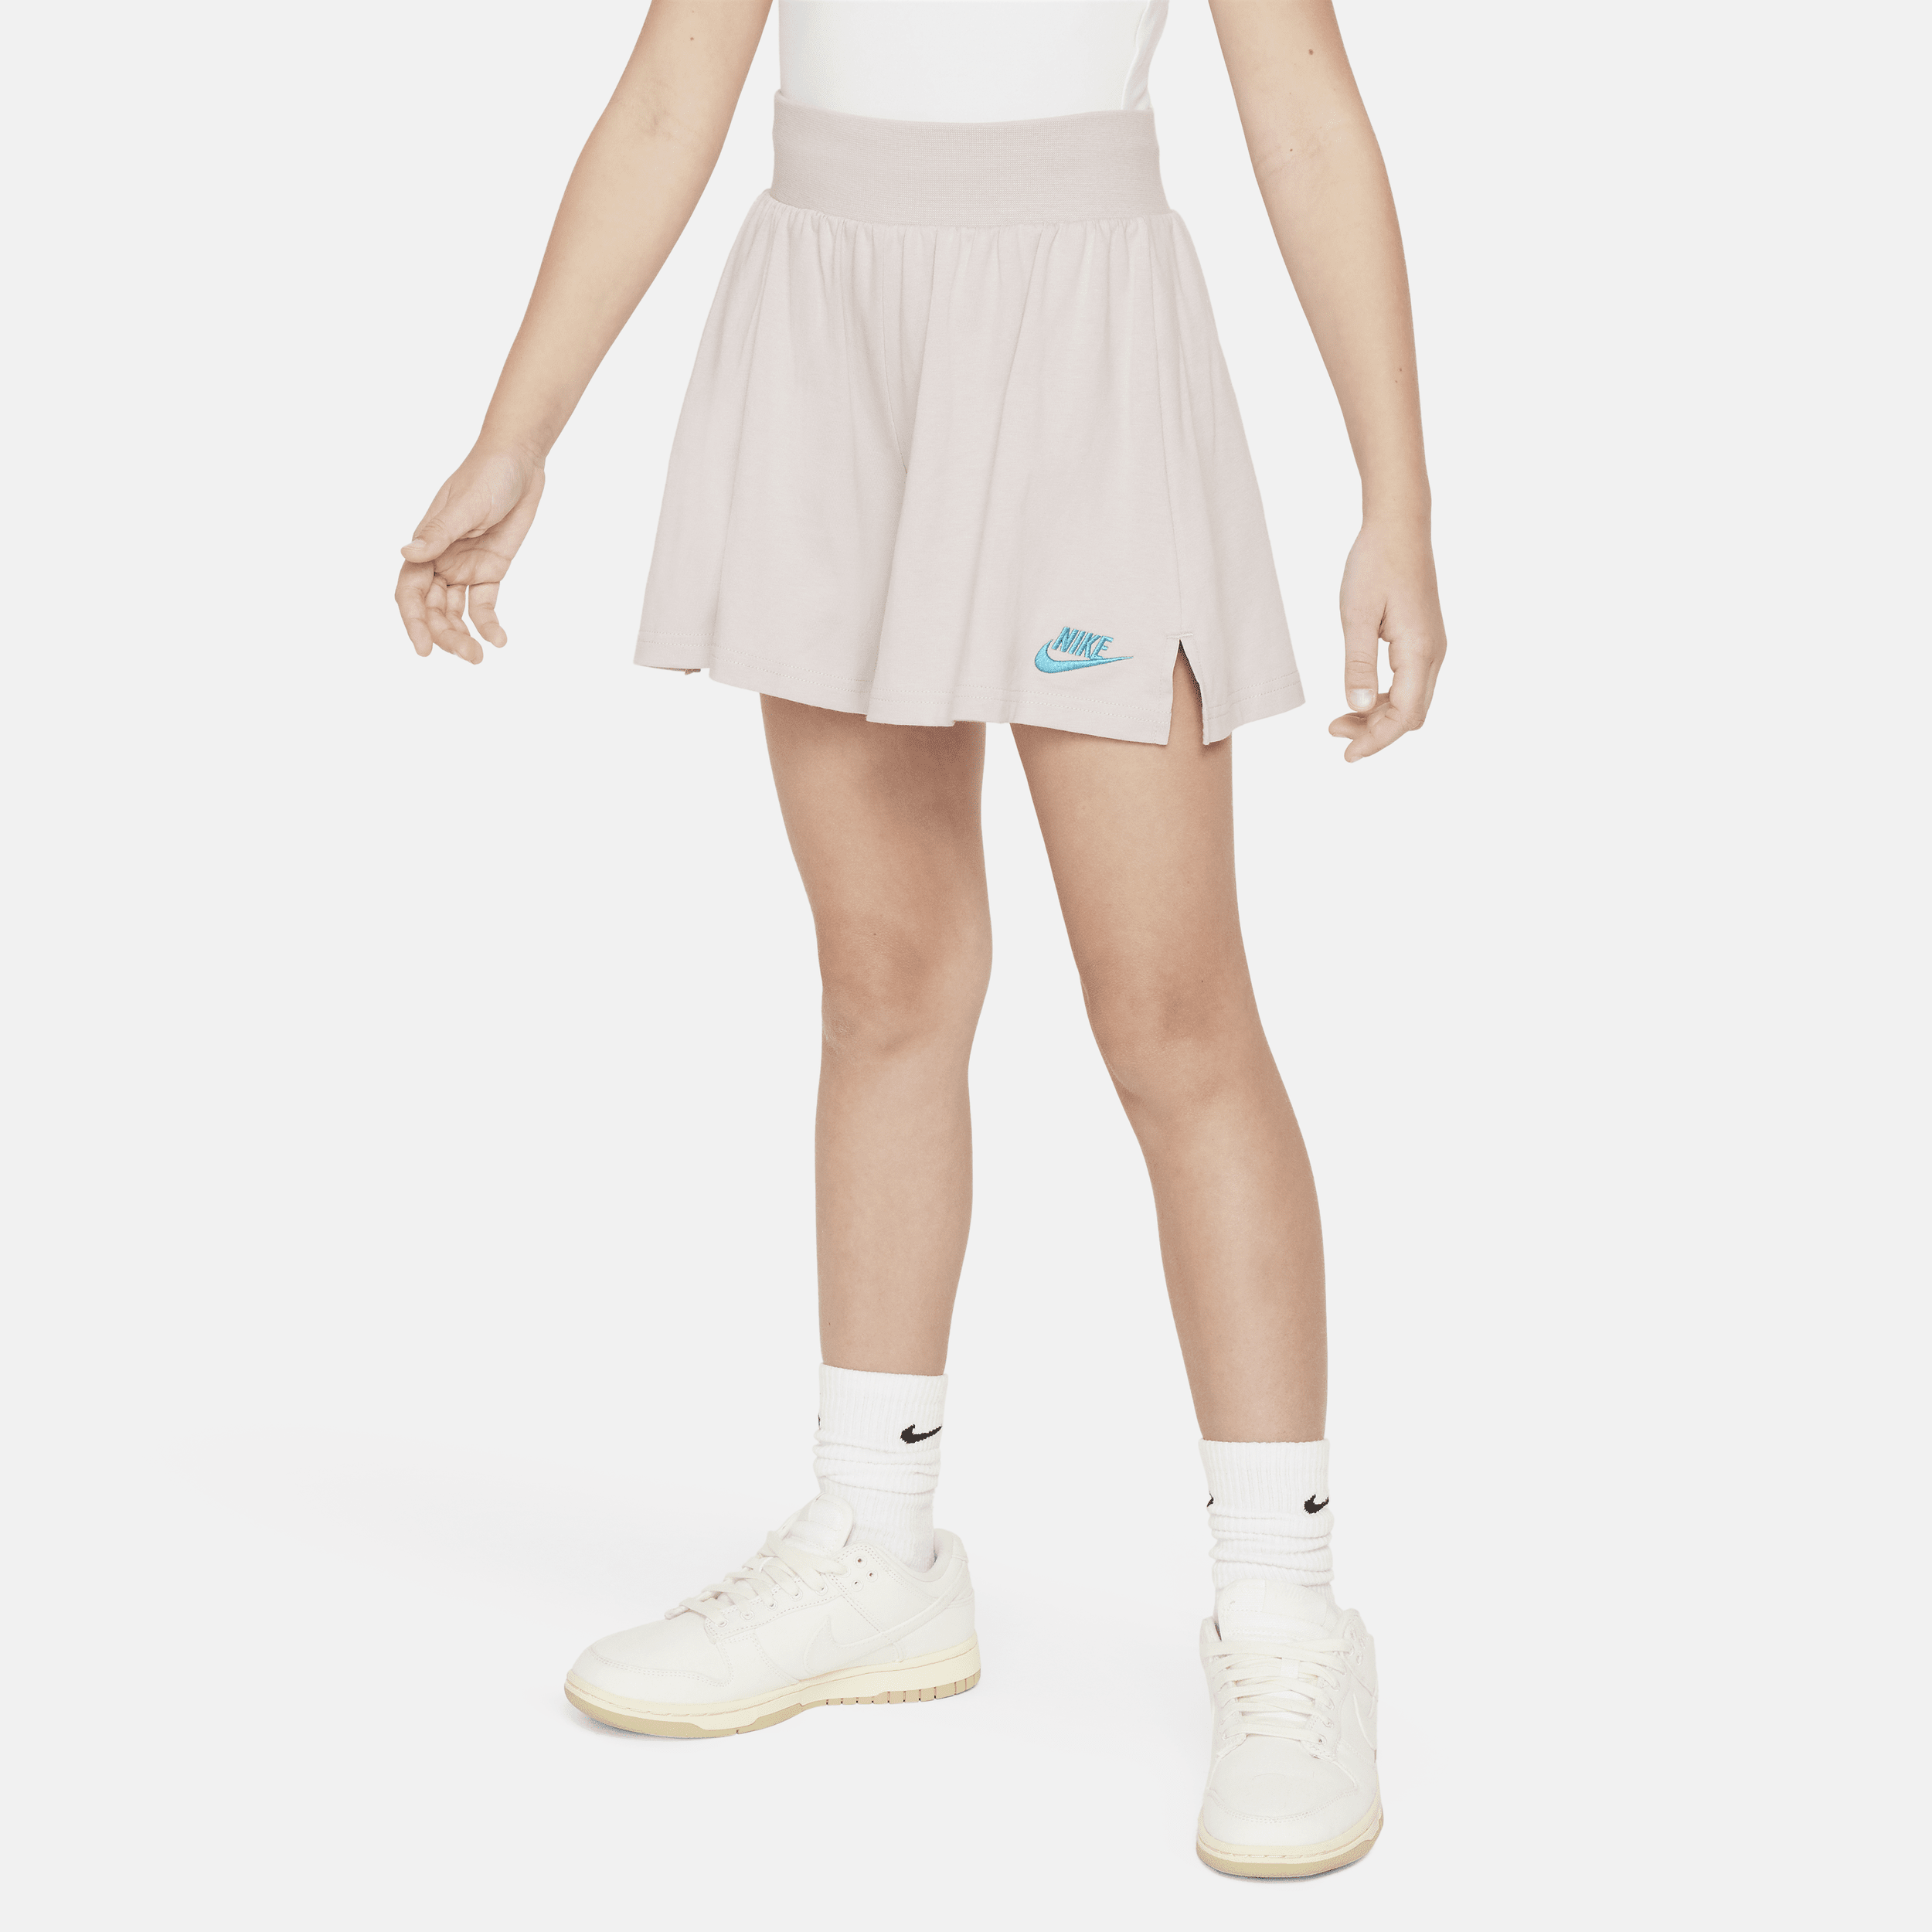 Nike Sportswear Meisjesshorts - Paars